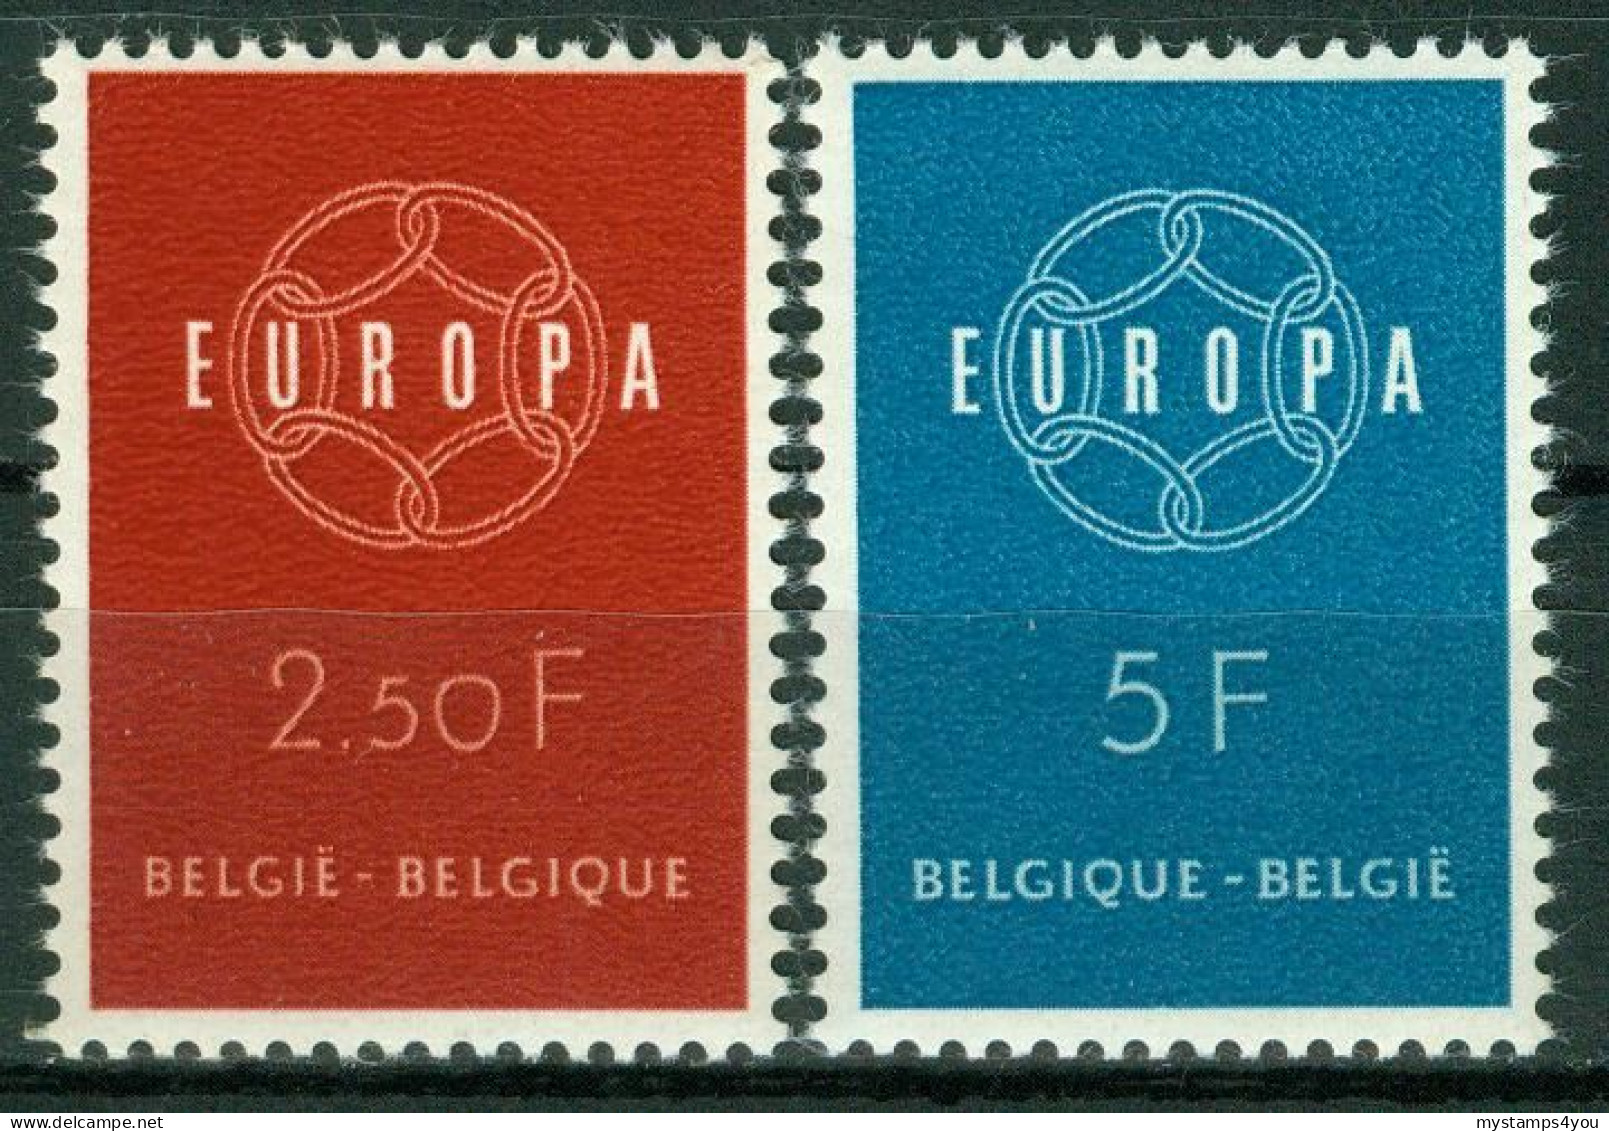 Bm Belgium 1959 MiNr 1164-1165 MNH | Europa Cept #5-02-03 - Ongebruikt